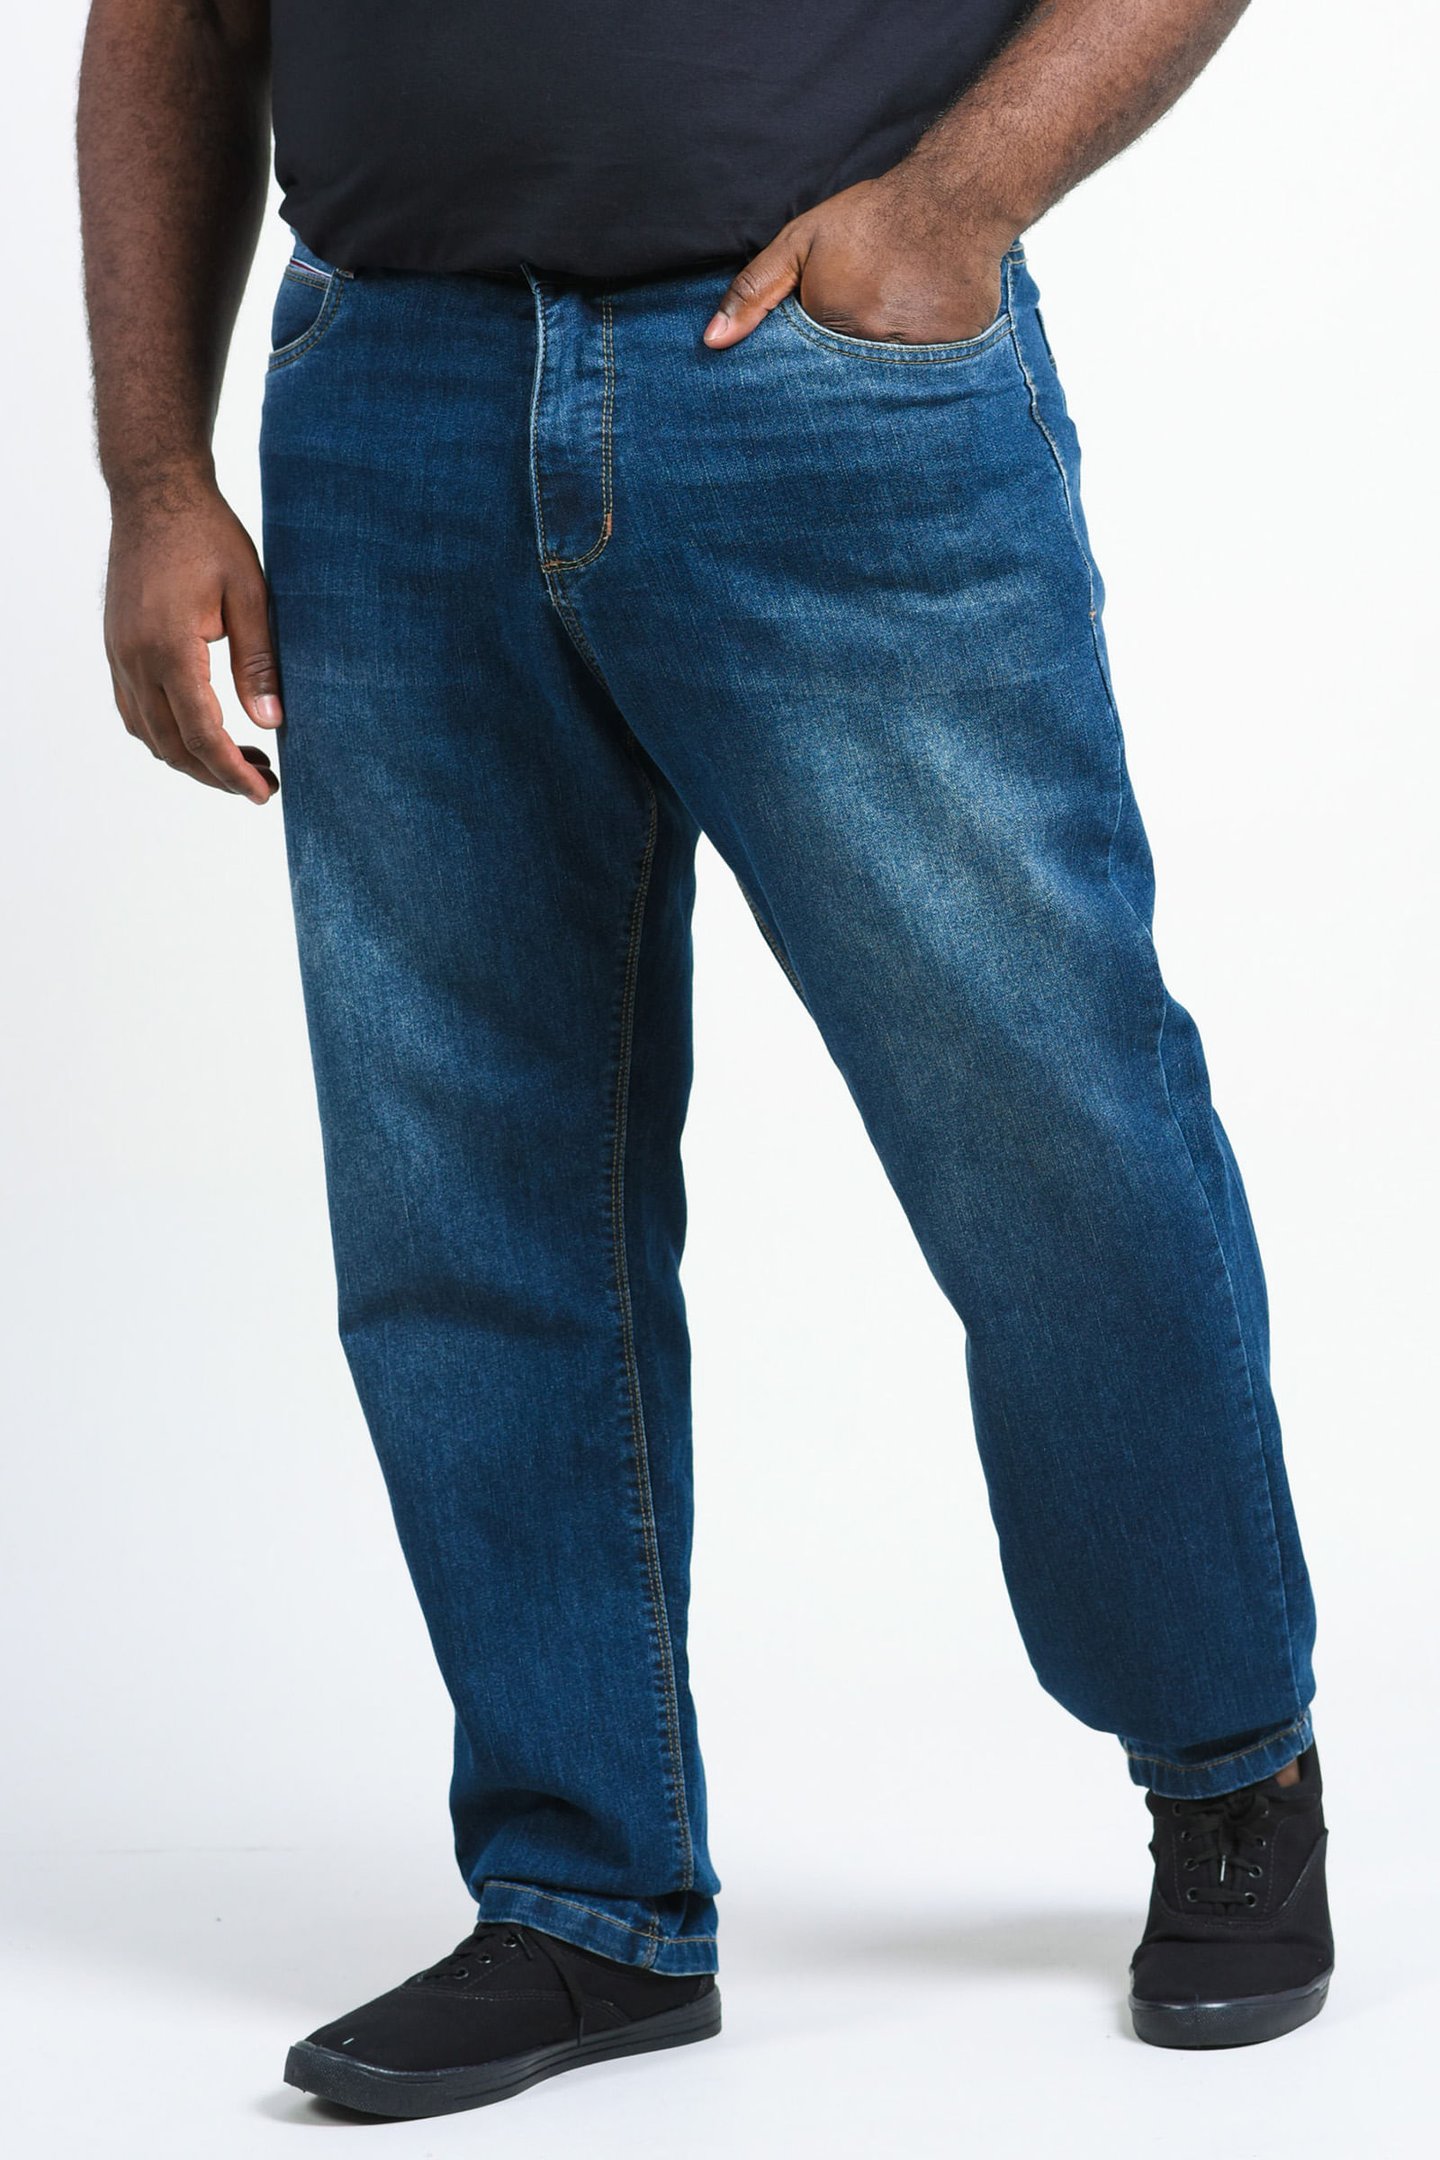 Calça jeans blue com detalhe de cardaço no bolso plus size jeans blue